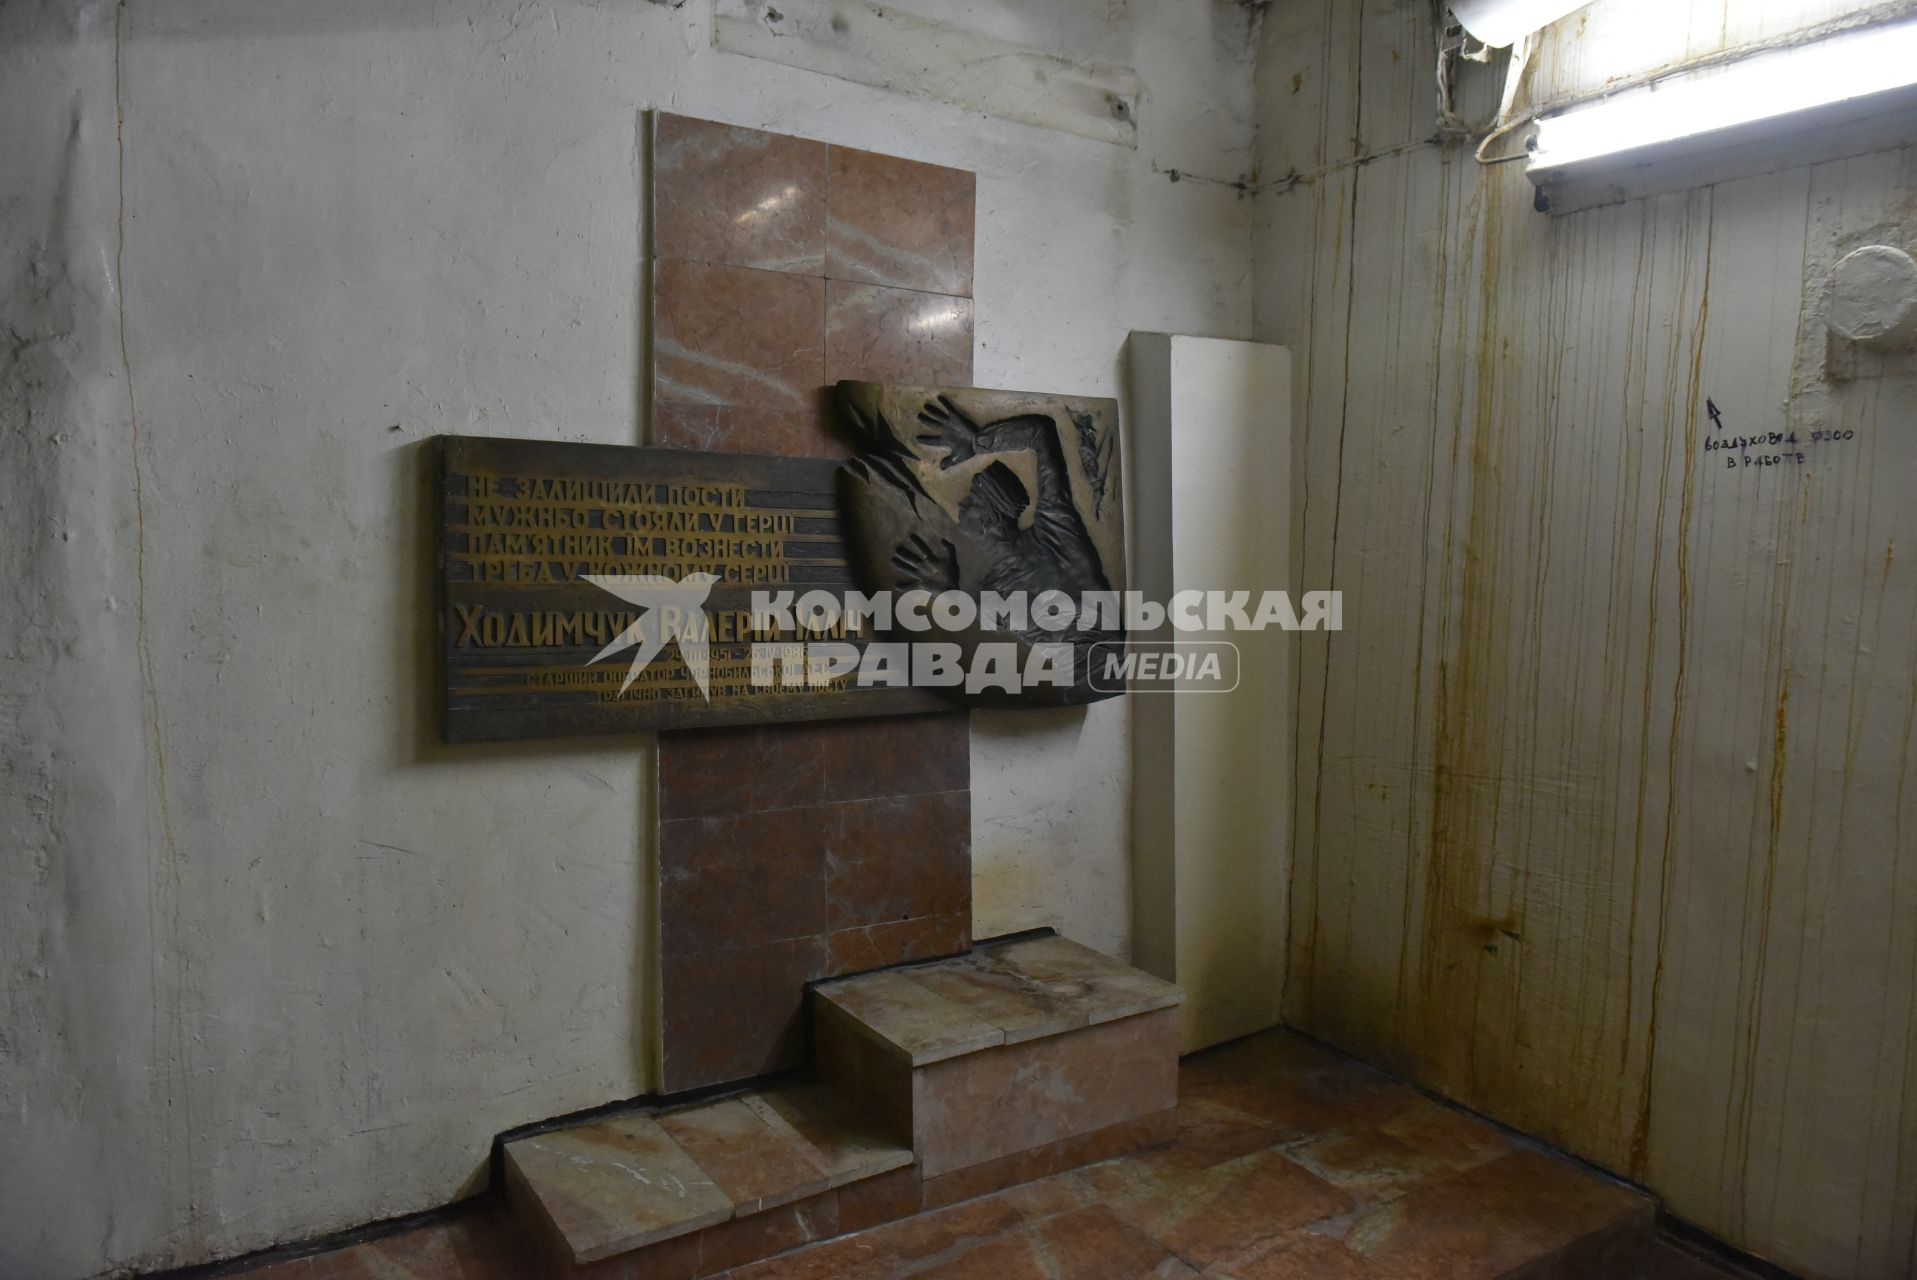 Чернобыль.   Памятник погибшему оператору  Валерию Холимчуку в помещениях Чернобыльской АЭС.